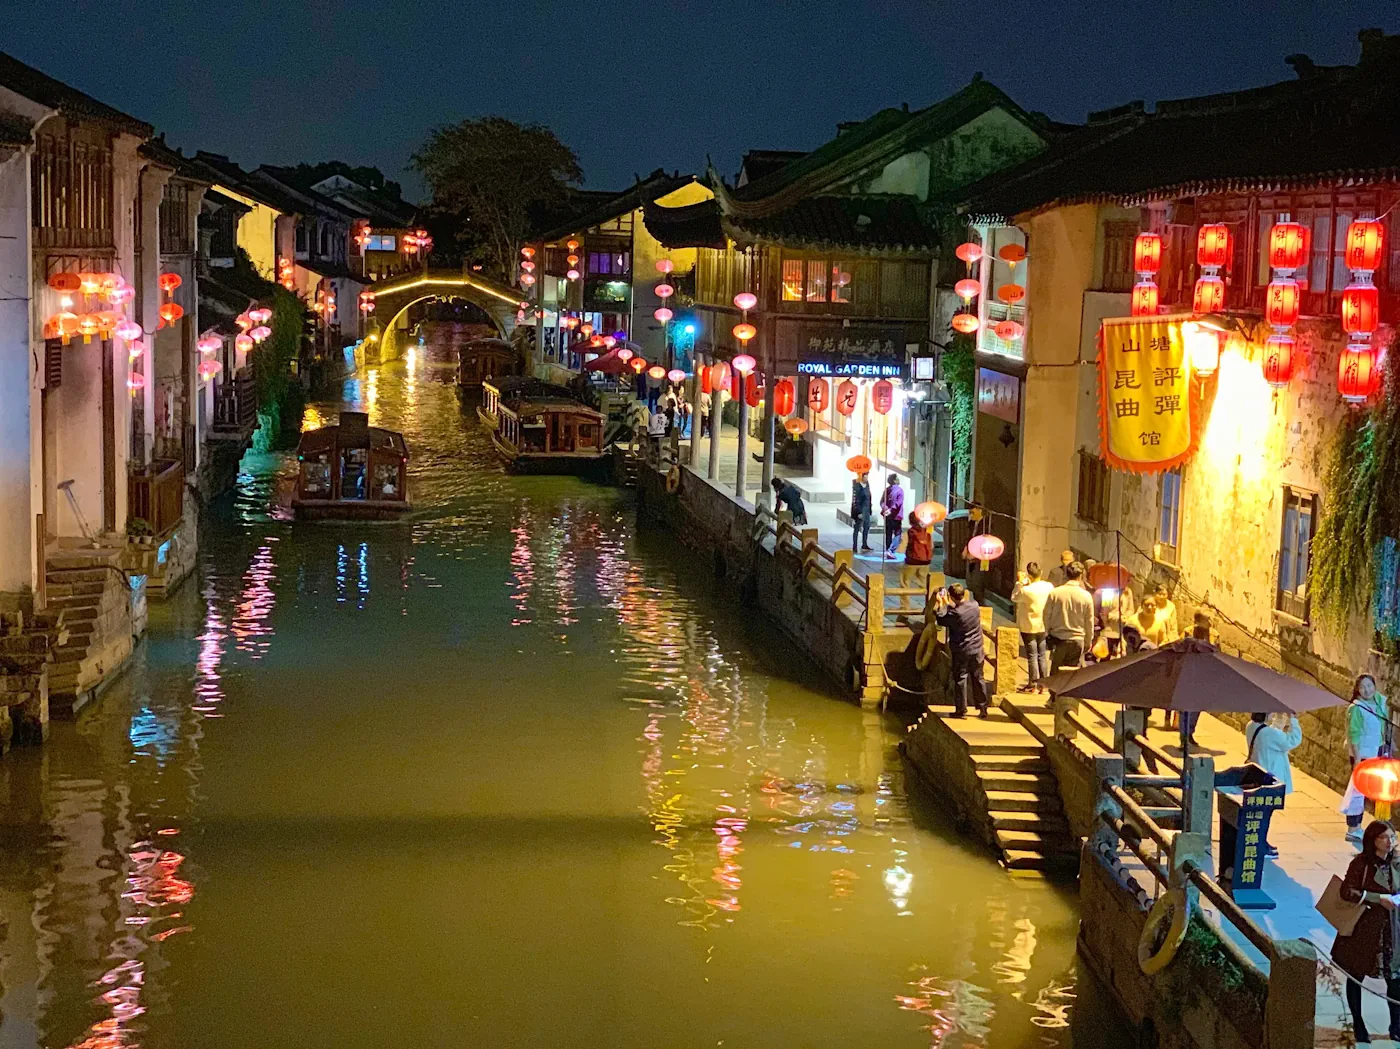 Mizhou tourism